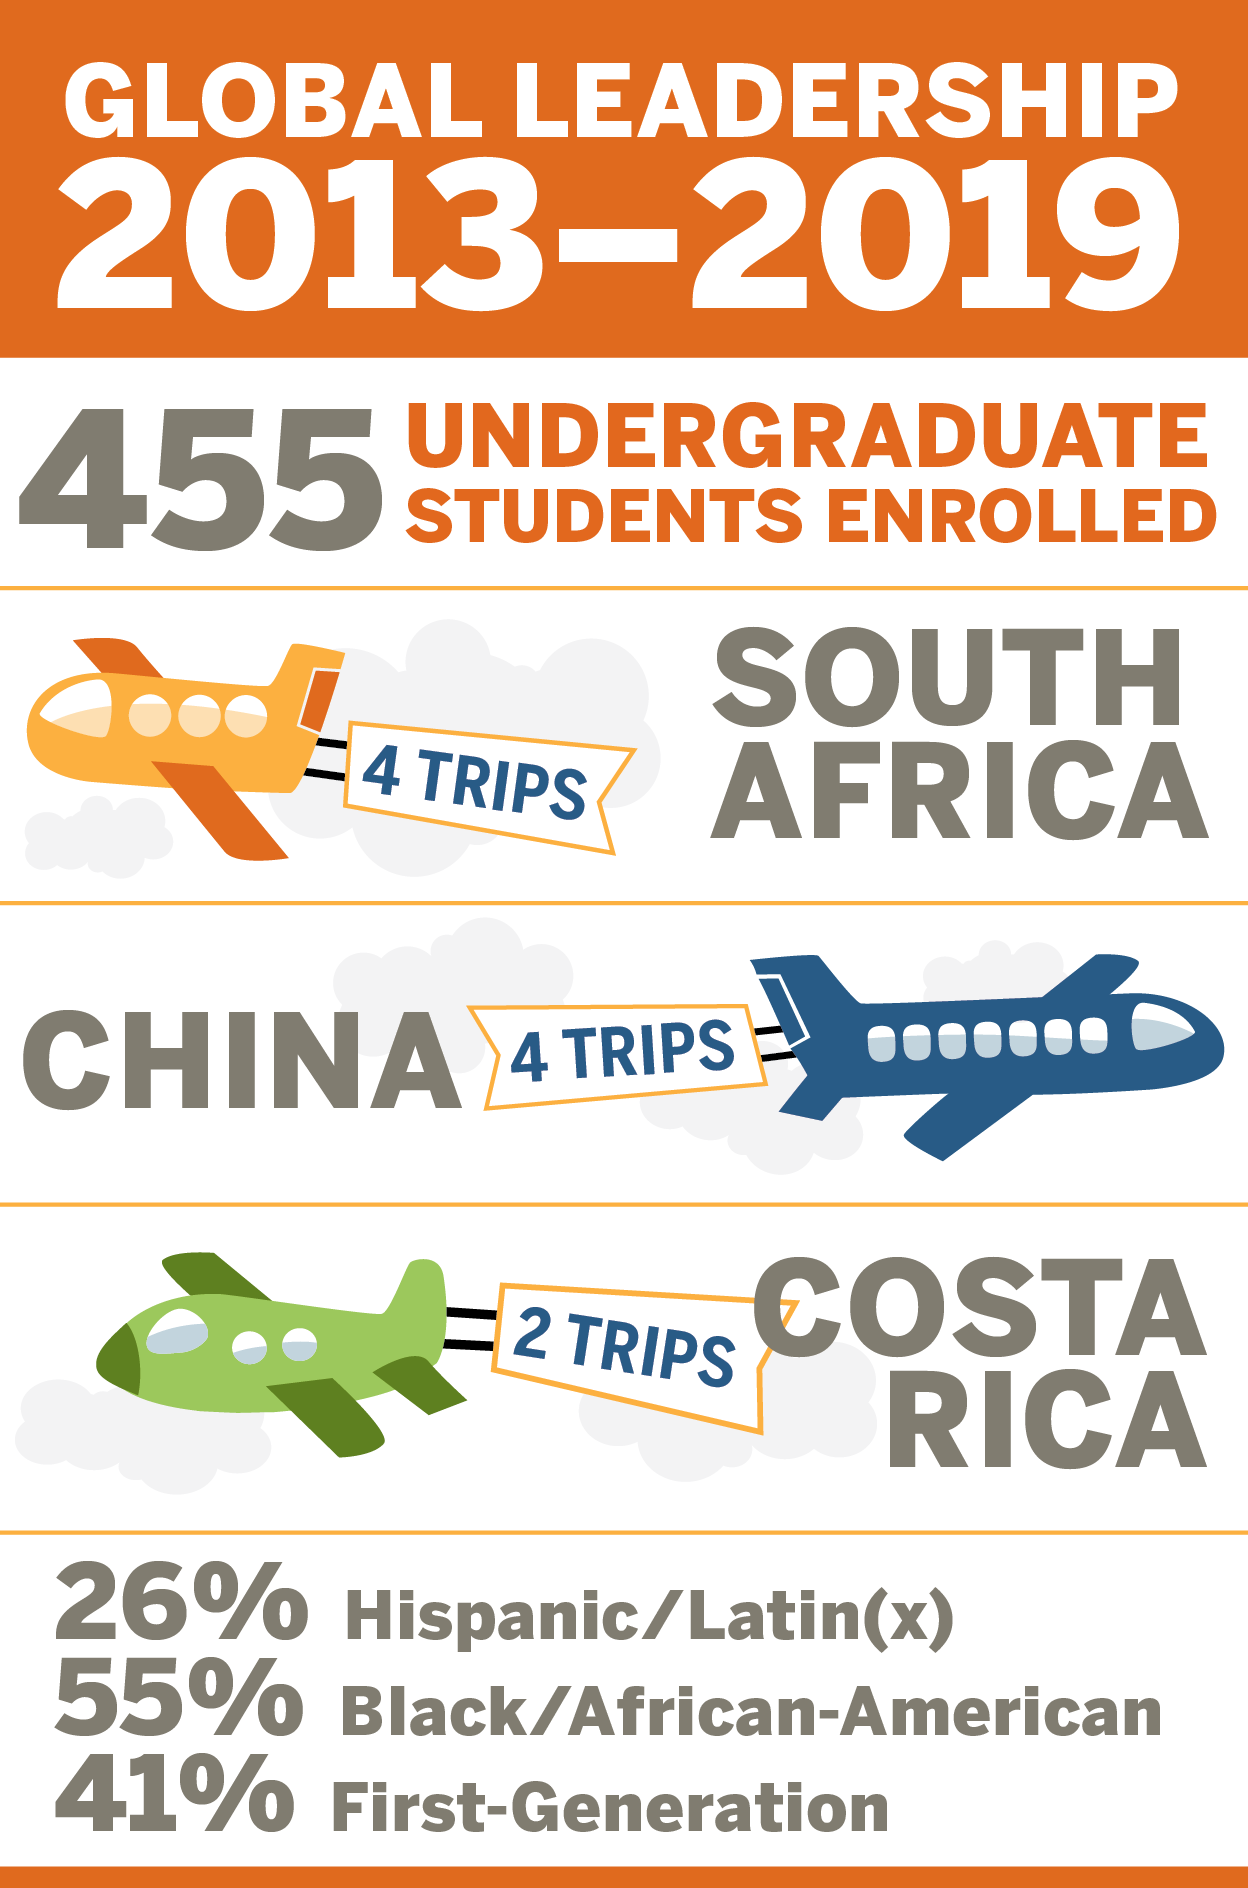 Global Leadership 2013-1019: 455 Undergraduate students enrolled